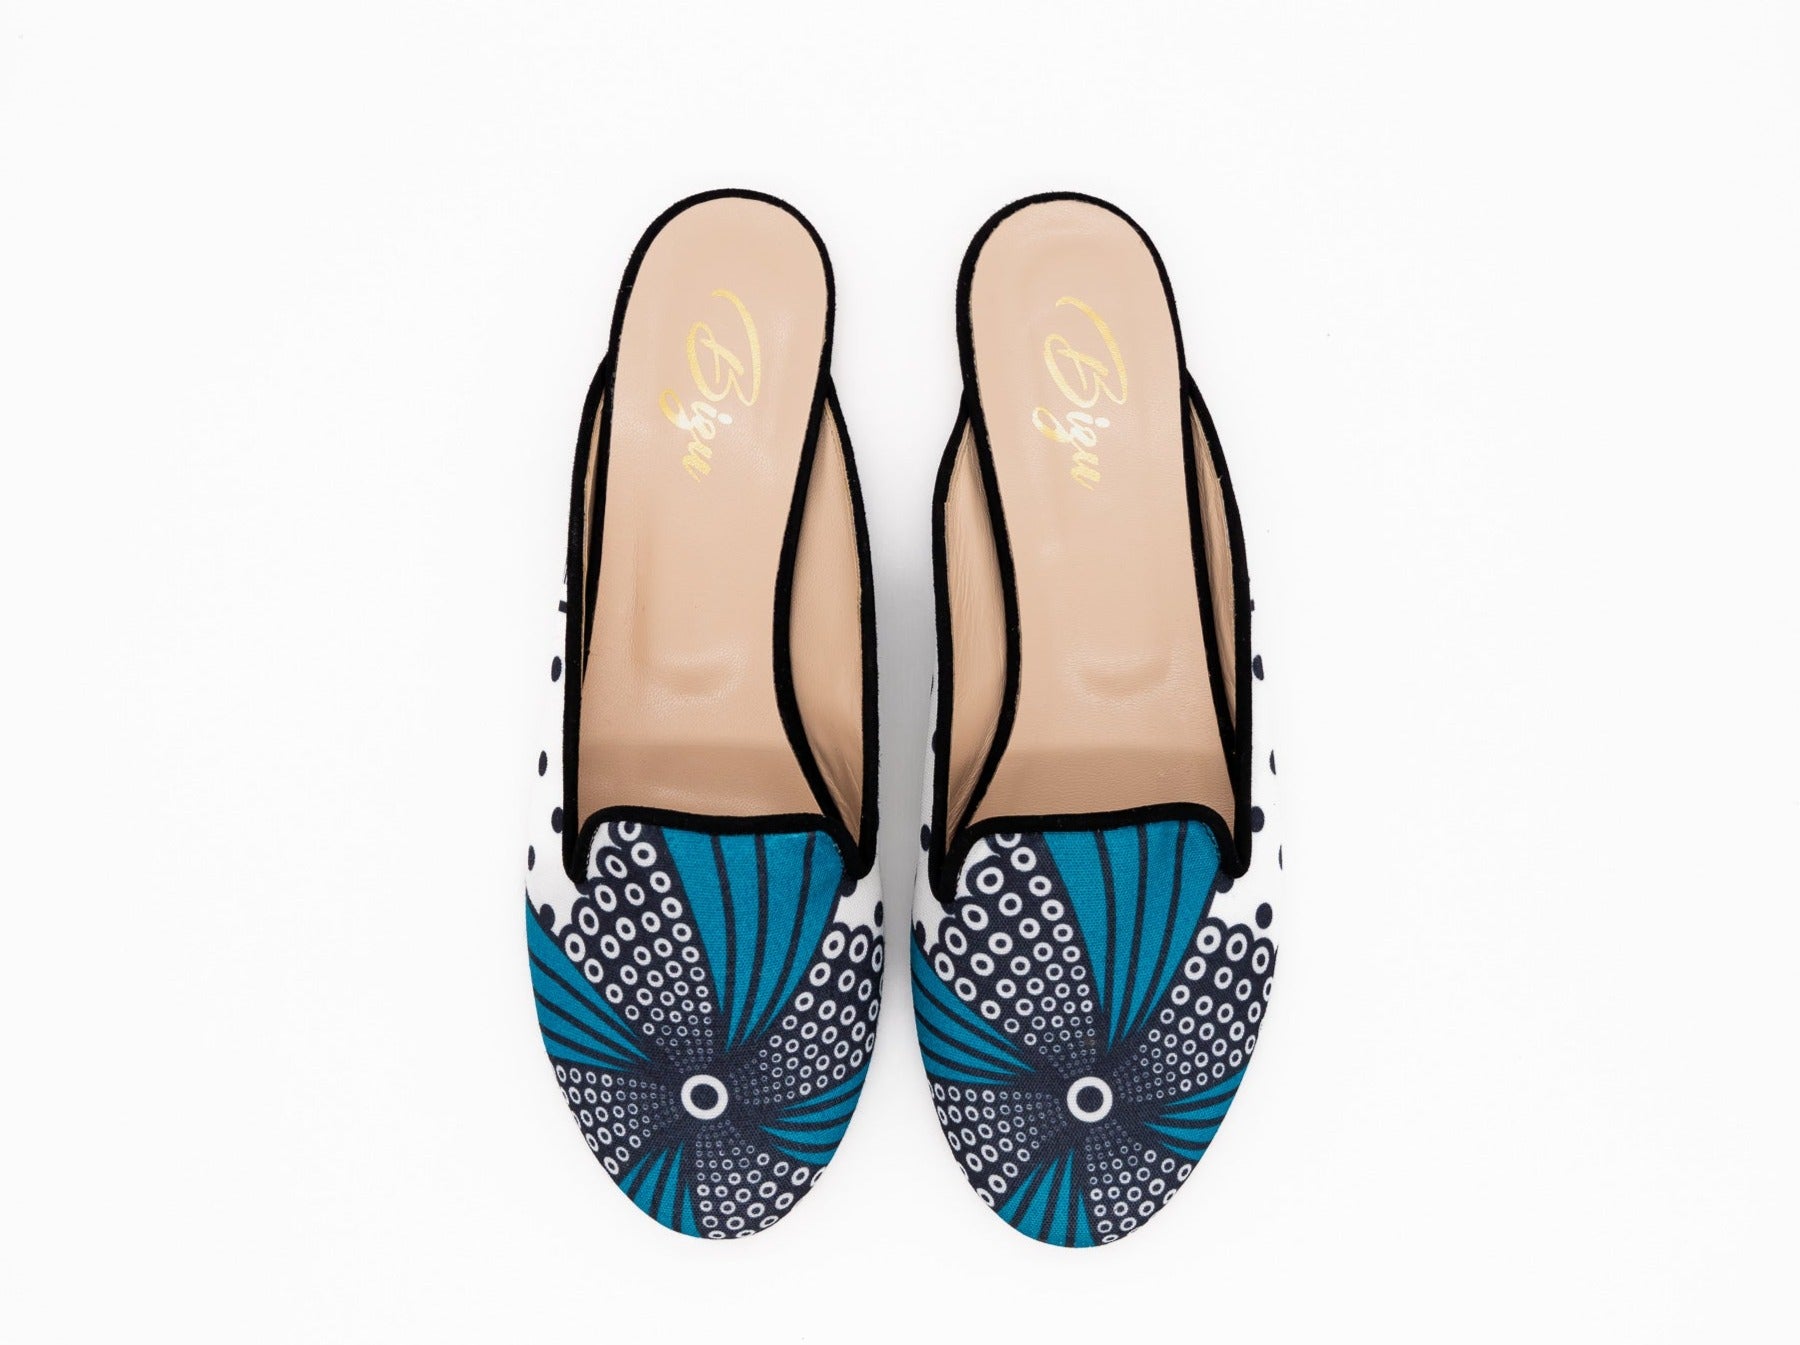 Zawadi Mule shoes with bold patterns